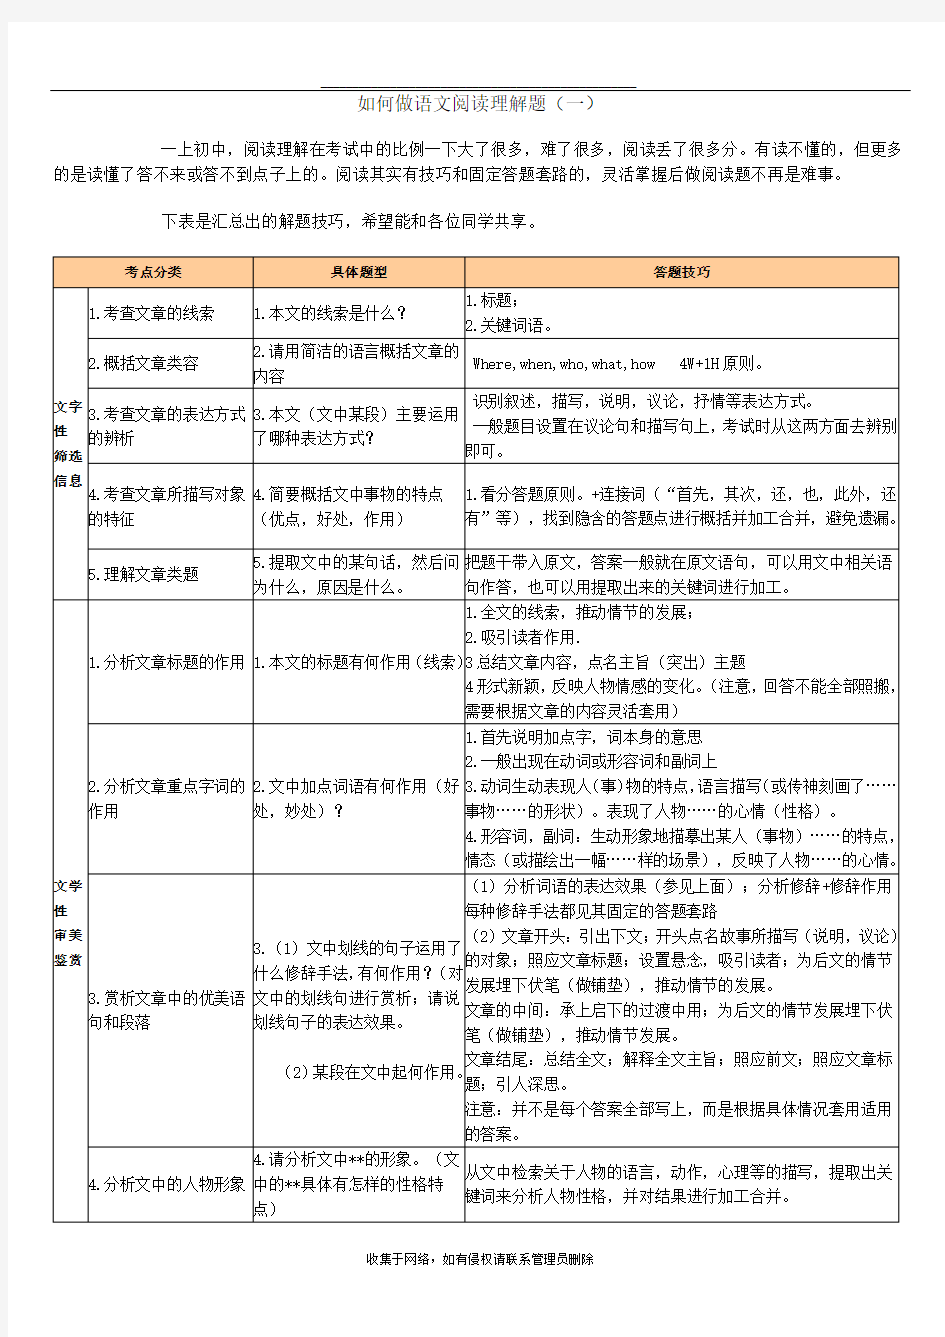 最新初中语文阅读理解答题公式大全(绝对有用)